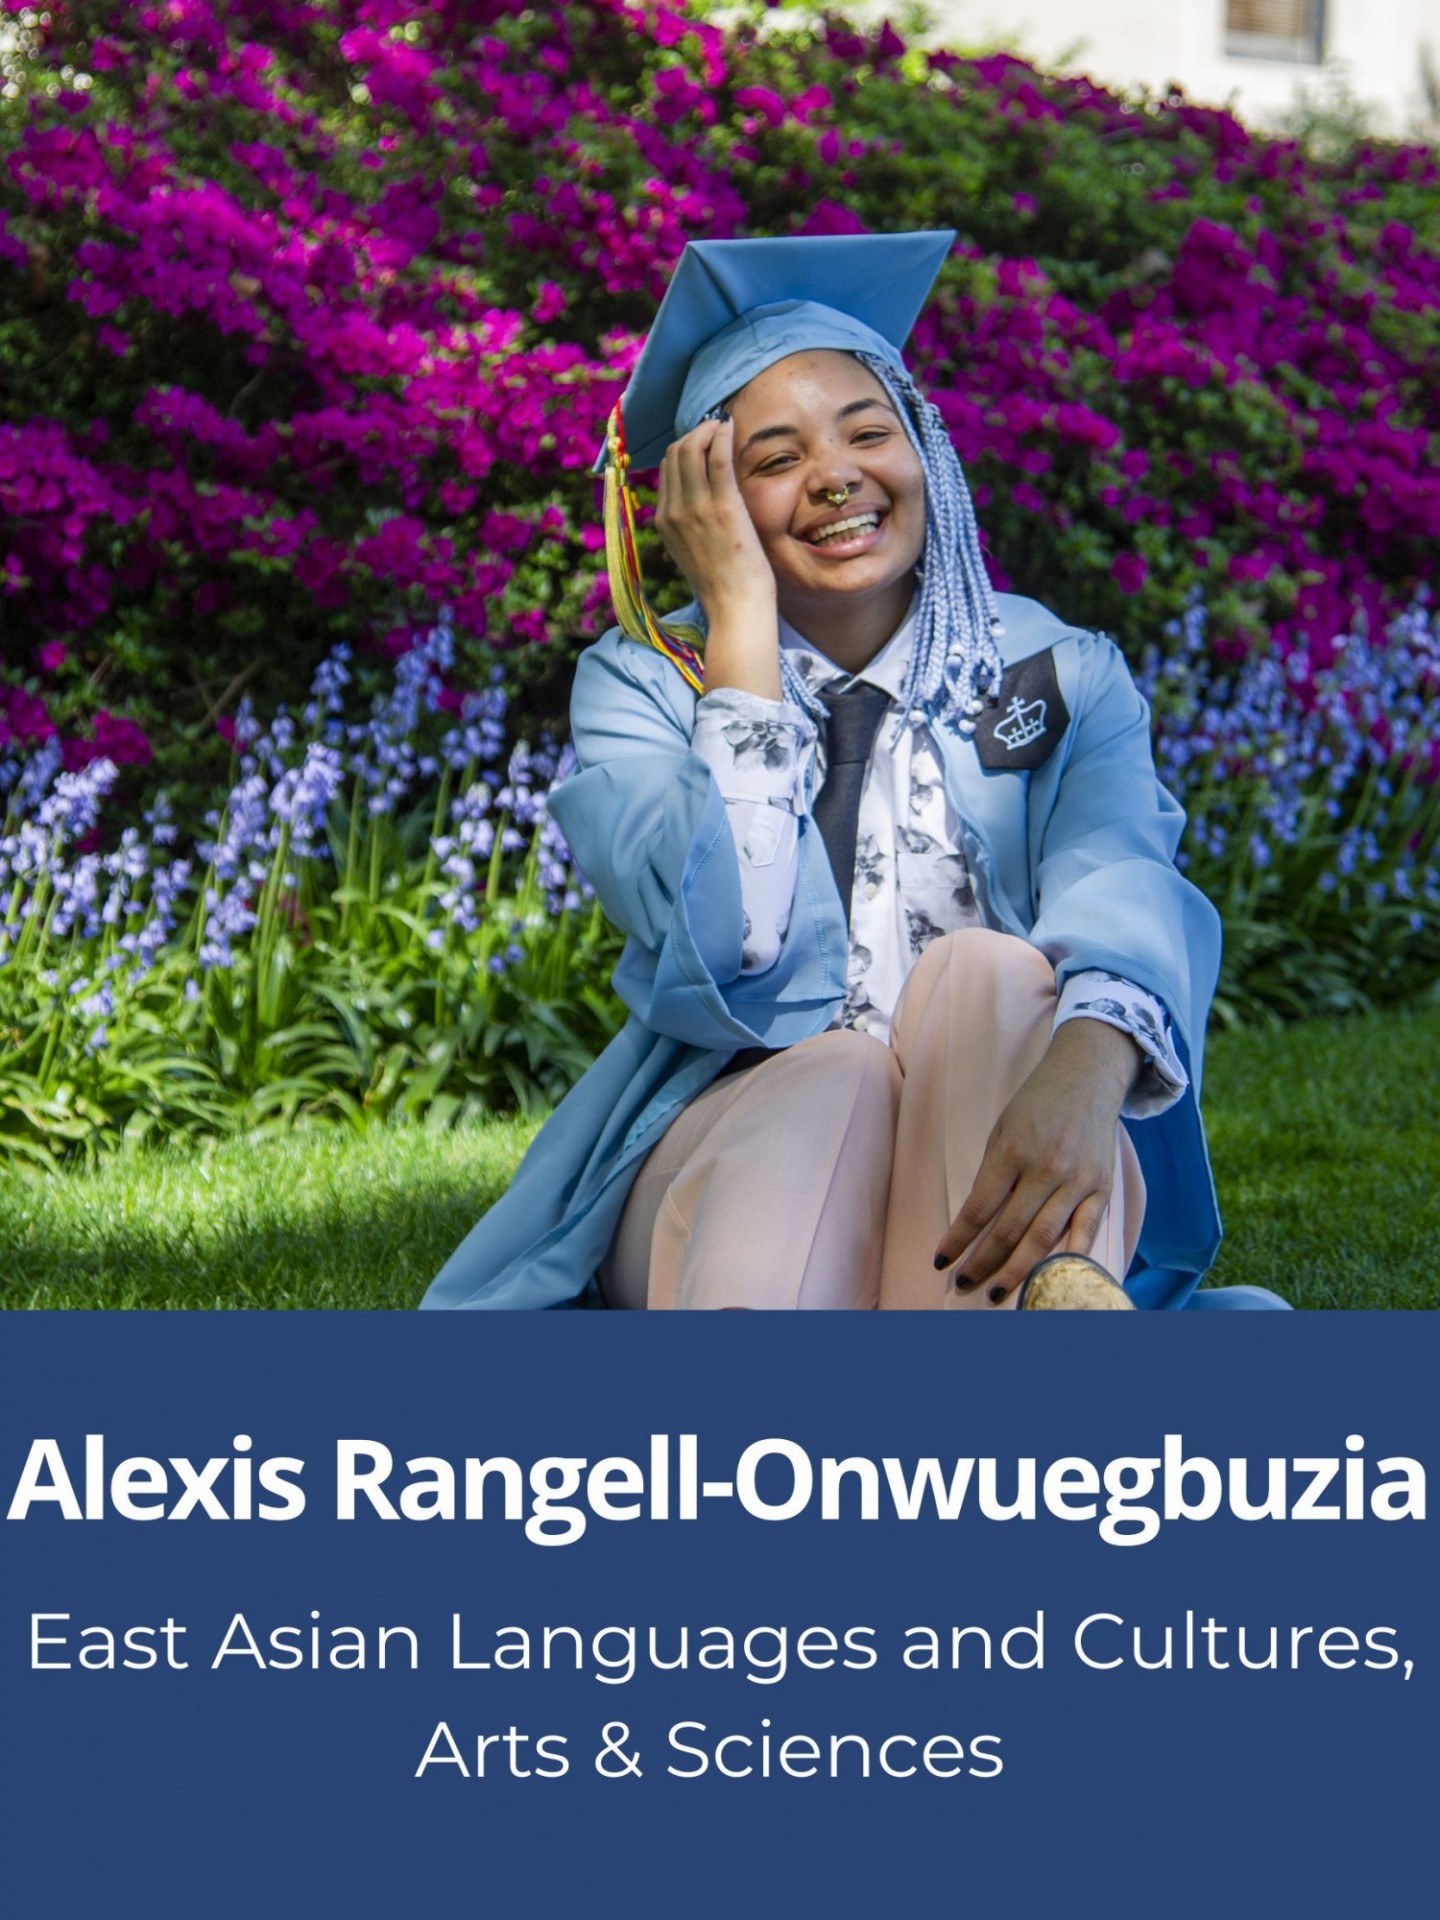 Headshot of Alexis Rangell-Onwuegbuzia